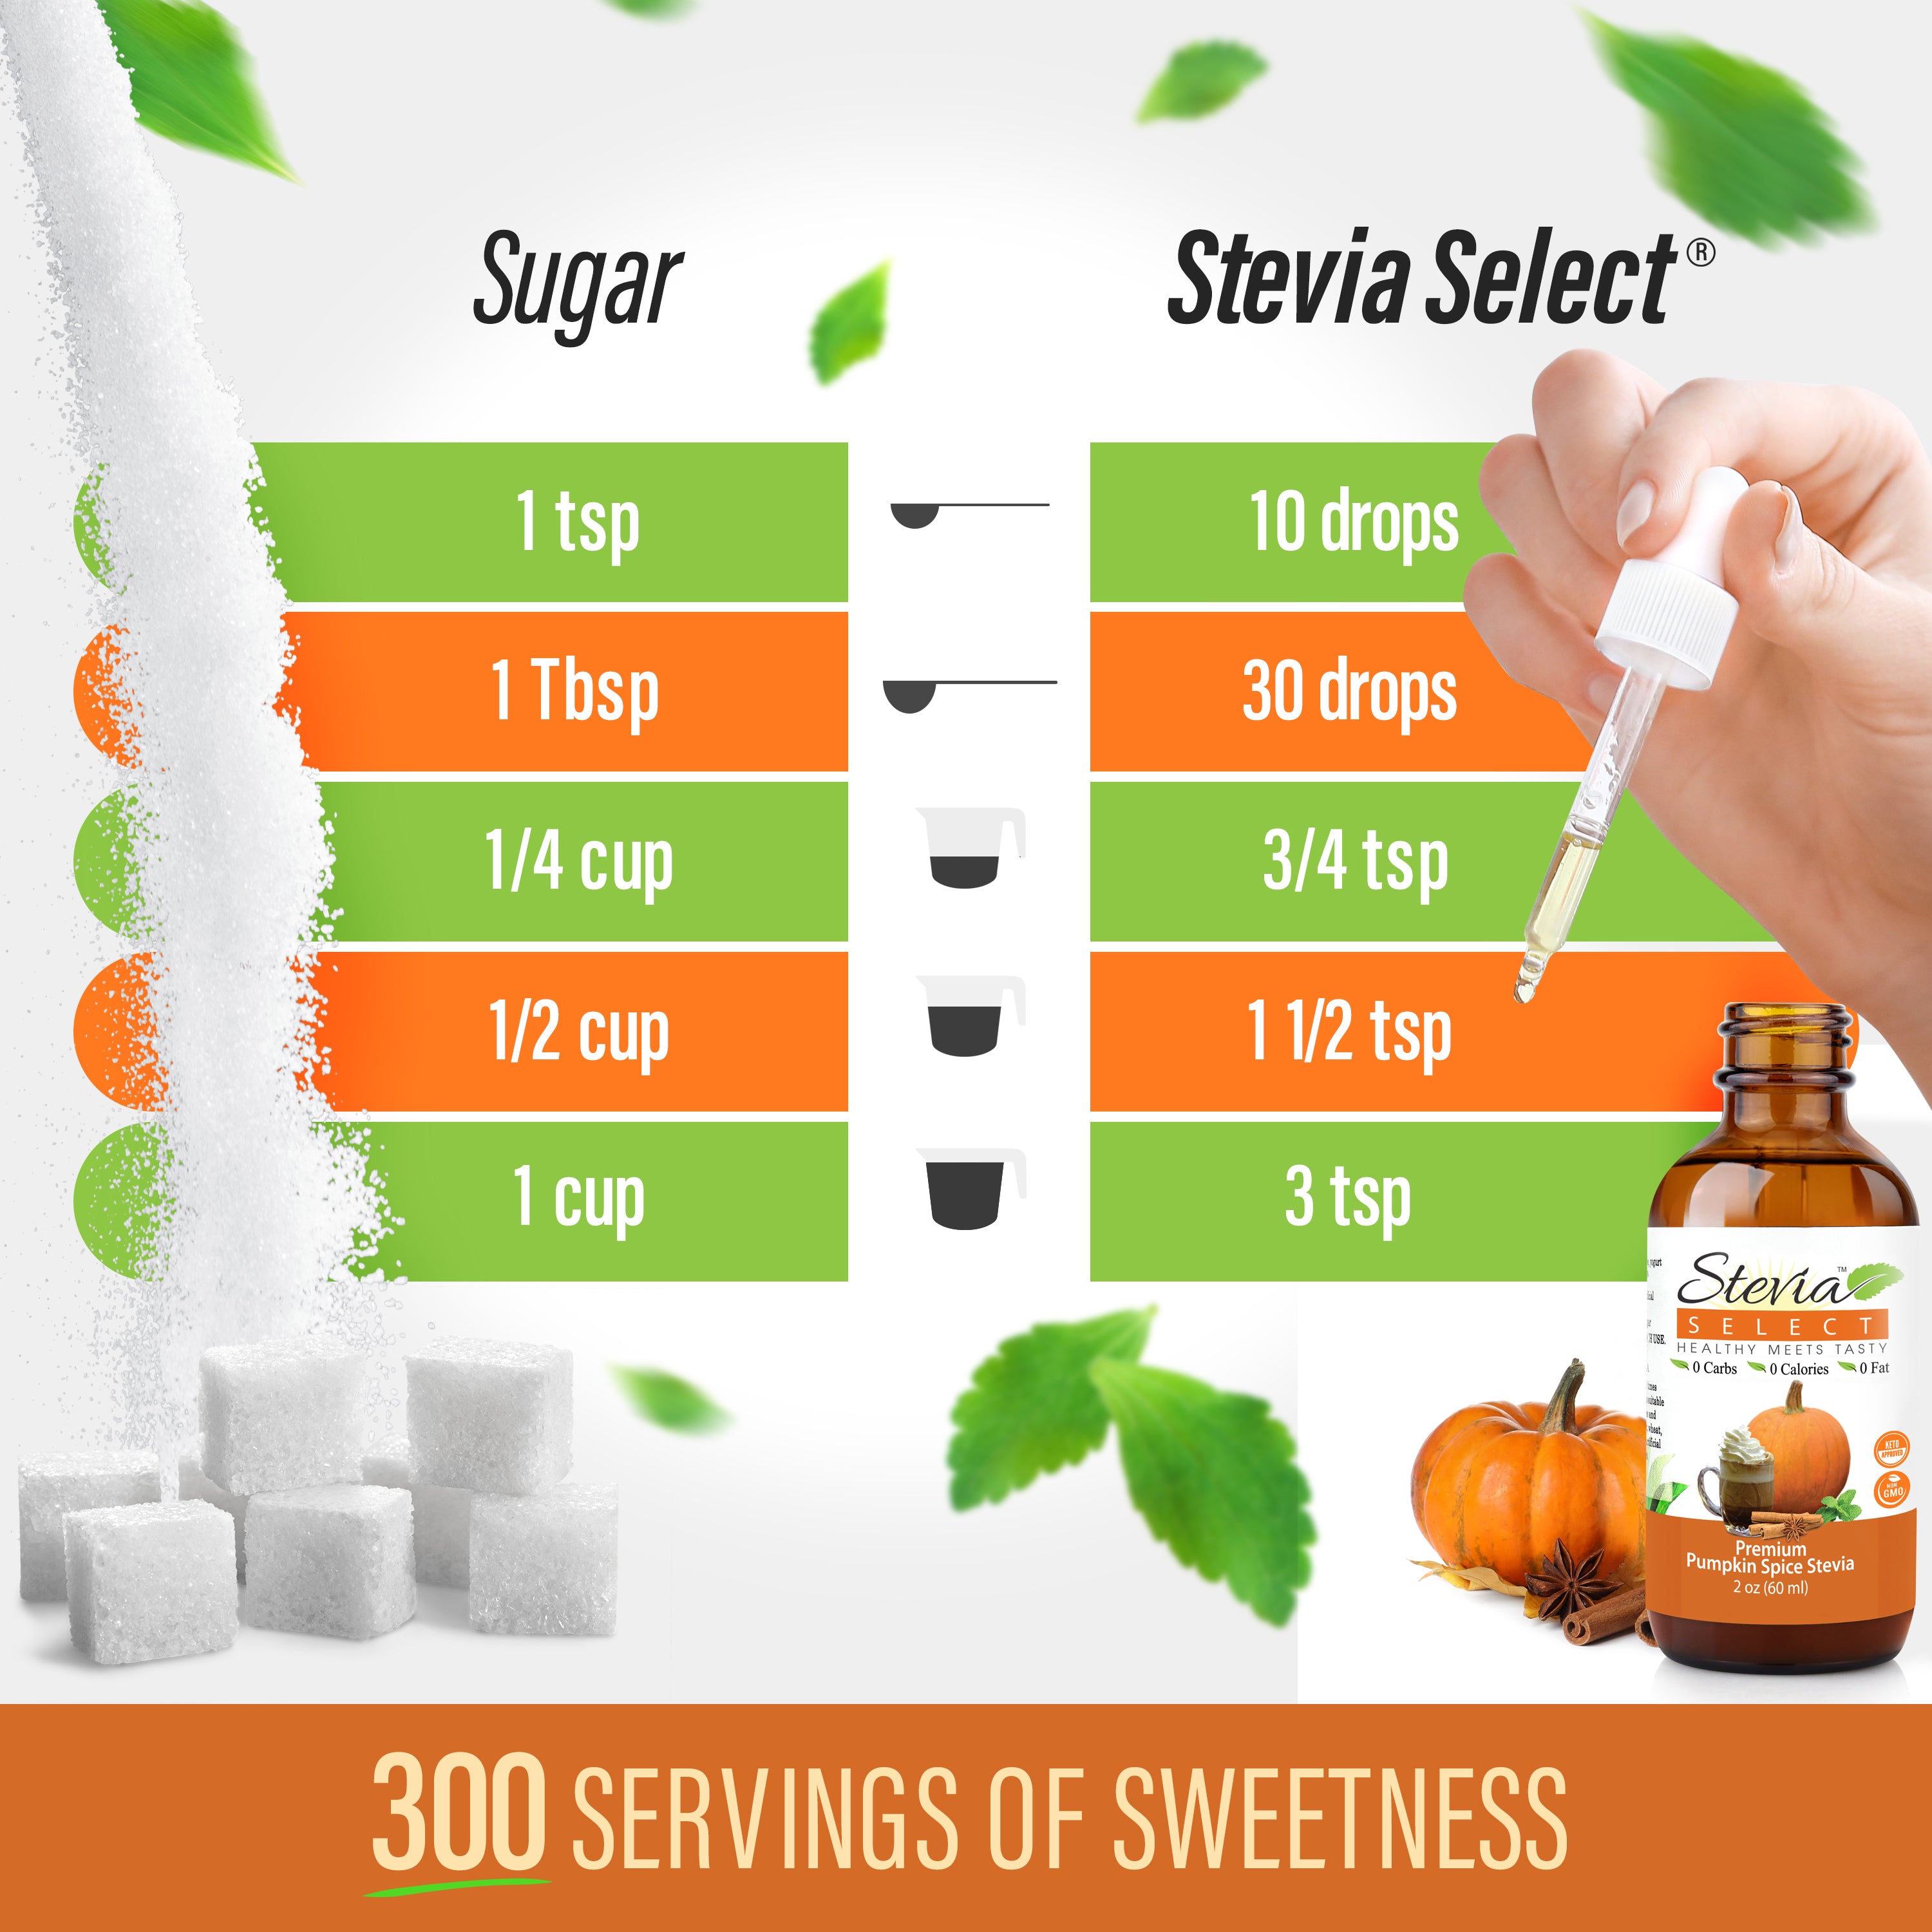 Stevia Liquid Pumpkin Spice Keto Flavor Drops 2oz